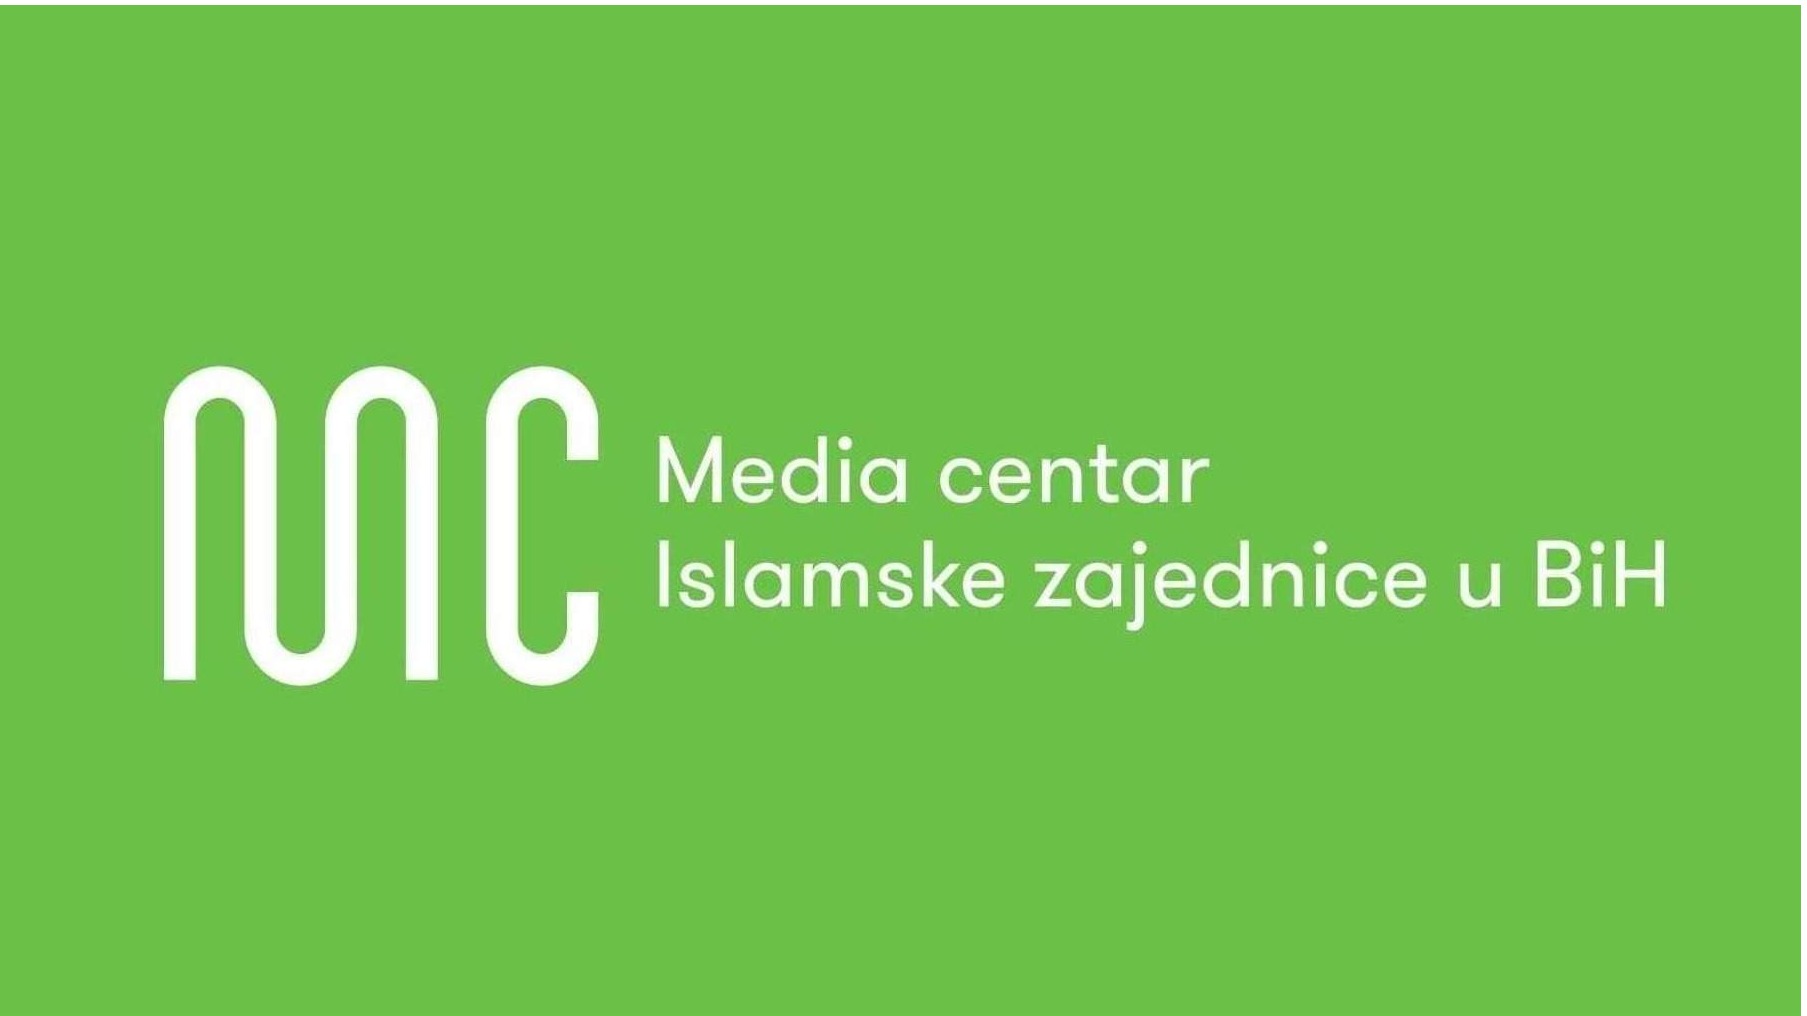 Konkurs za poziciju fotoreportera u Media centra Islamske zajednice u Bosni i Hercegovini